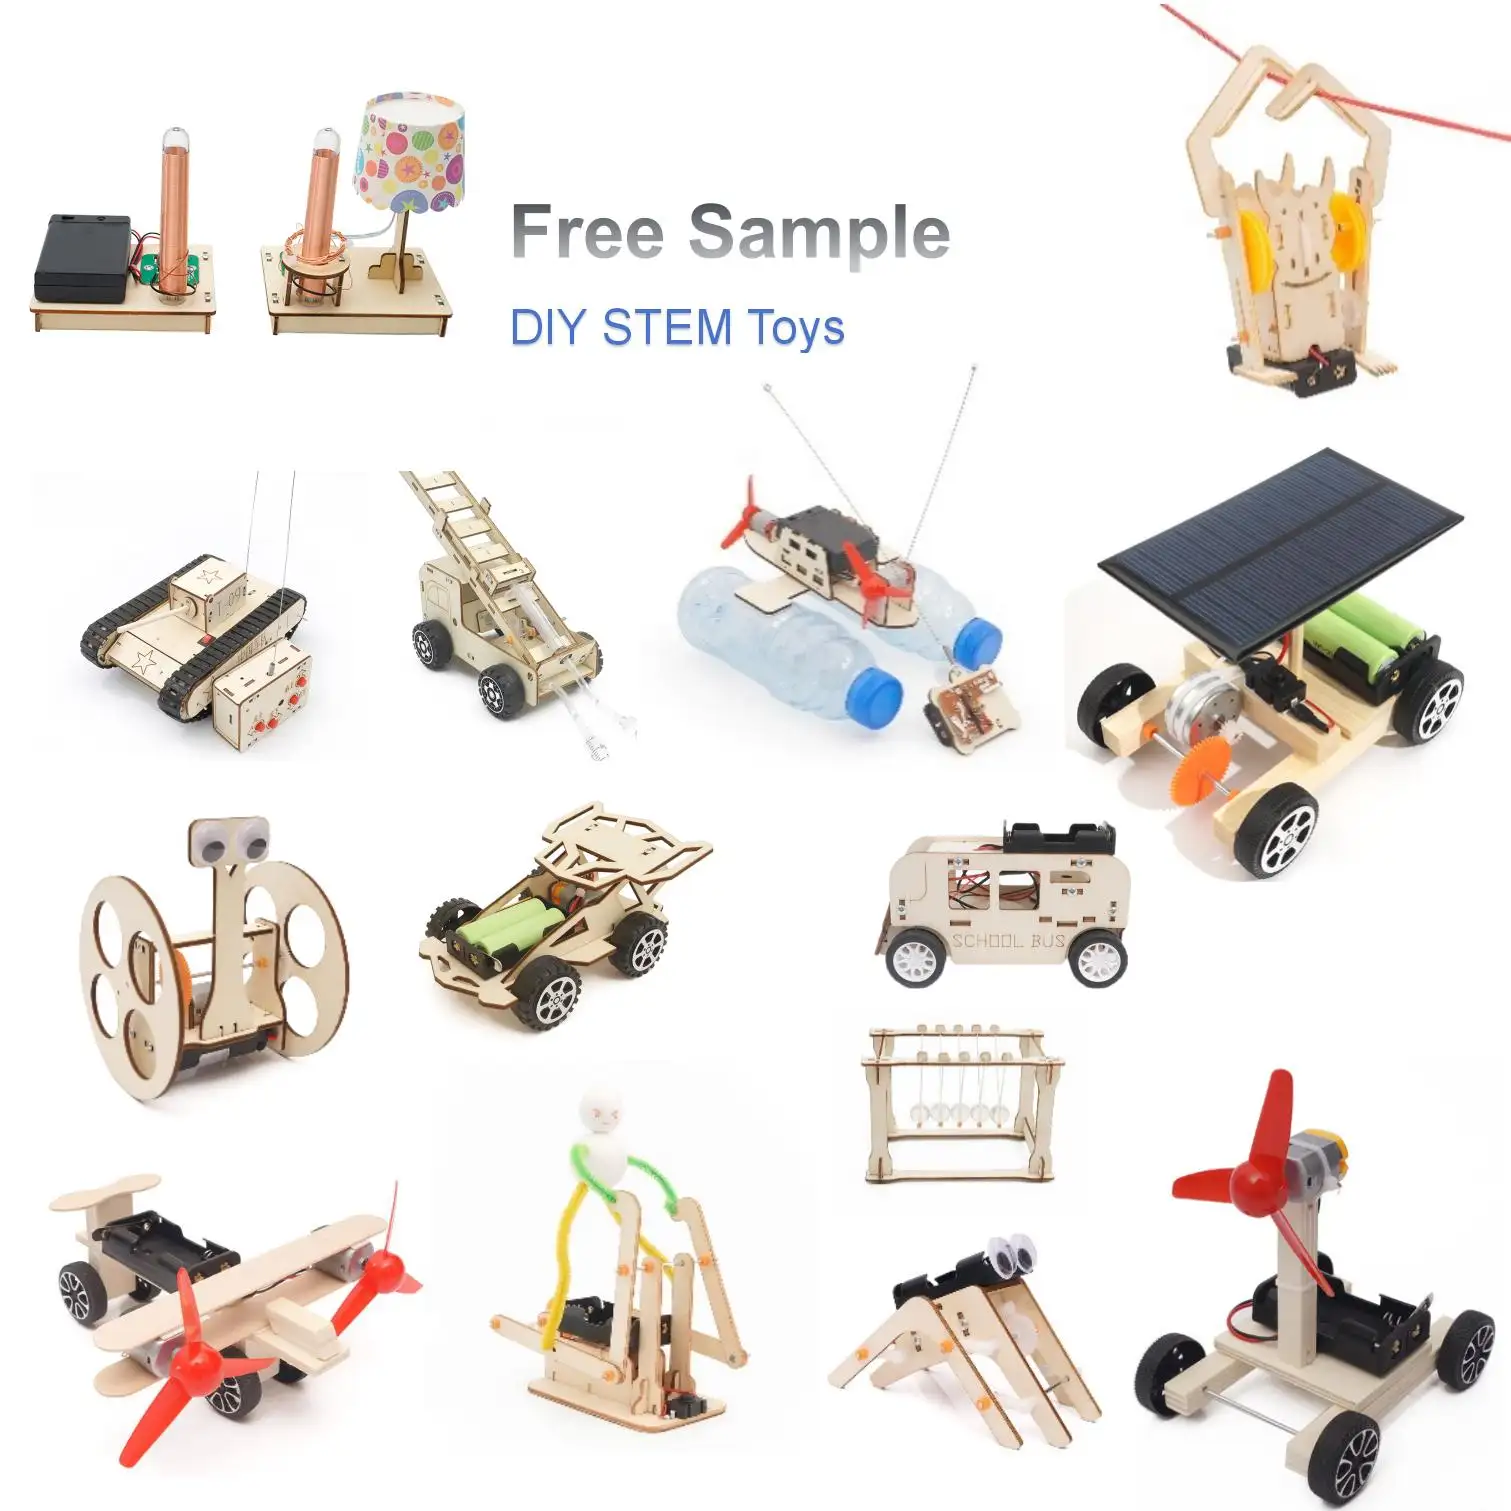 Mi Diy Physics Speelgoed Puzzel 3d Hout Bouwsteen Sets Educatief Speelgoed Houten Stam Speelgoed Educatieve Kits Voor Kinderen Science Kit